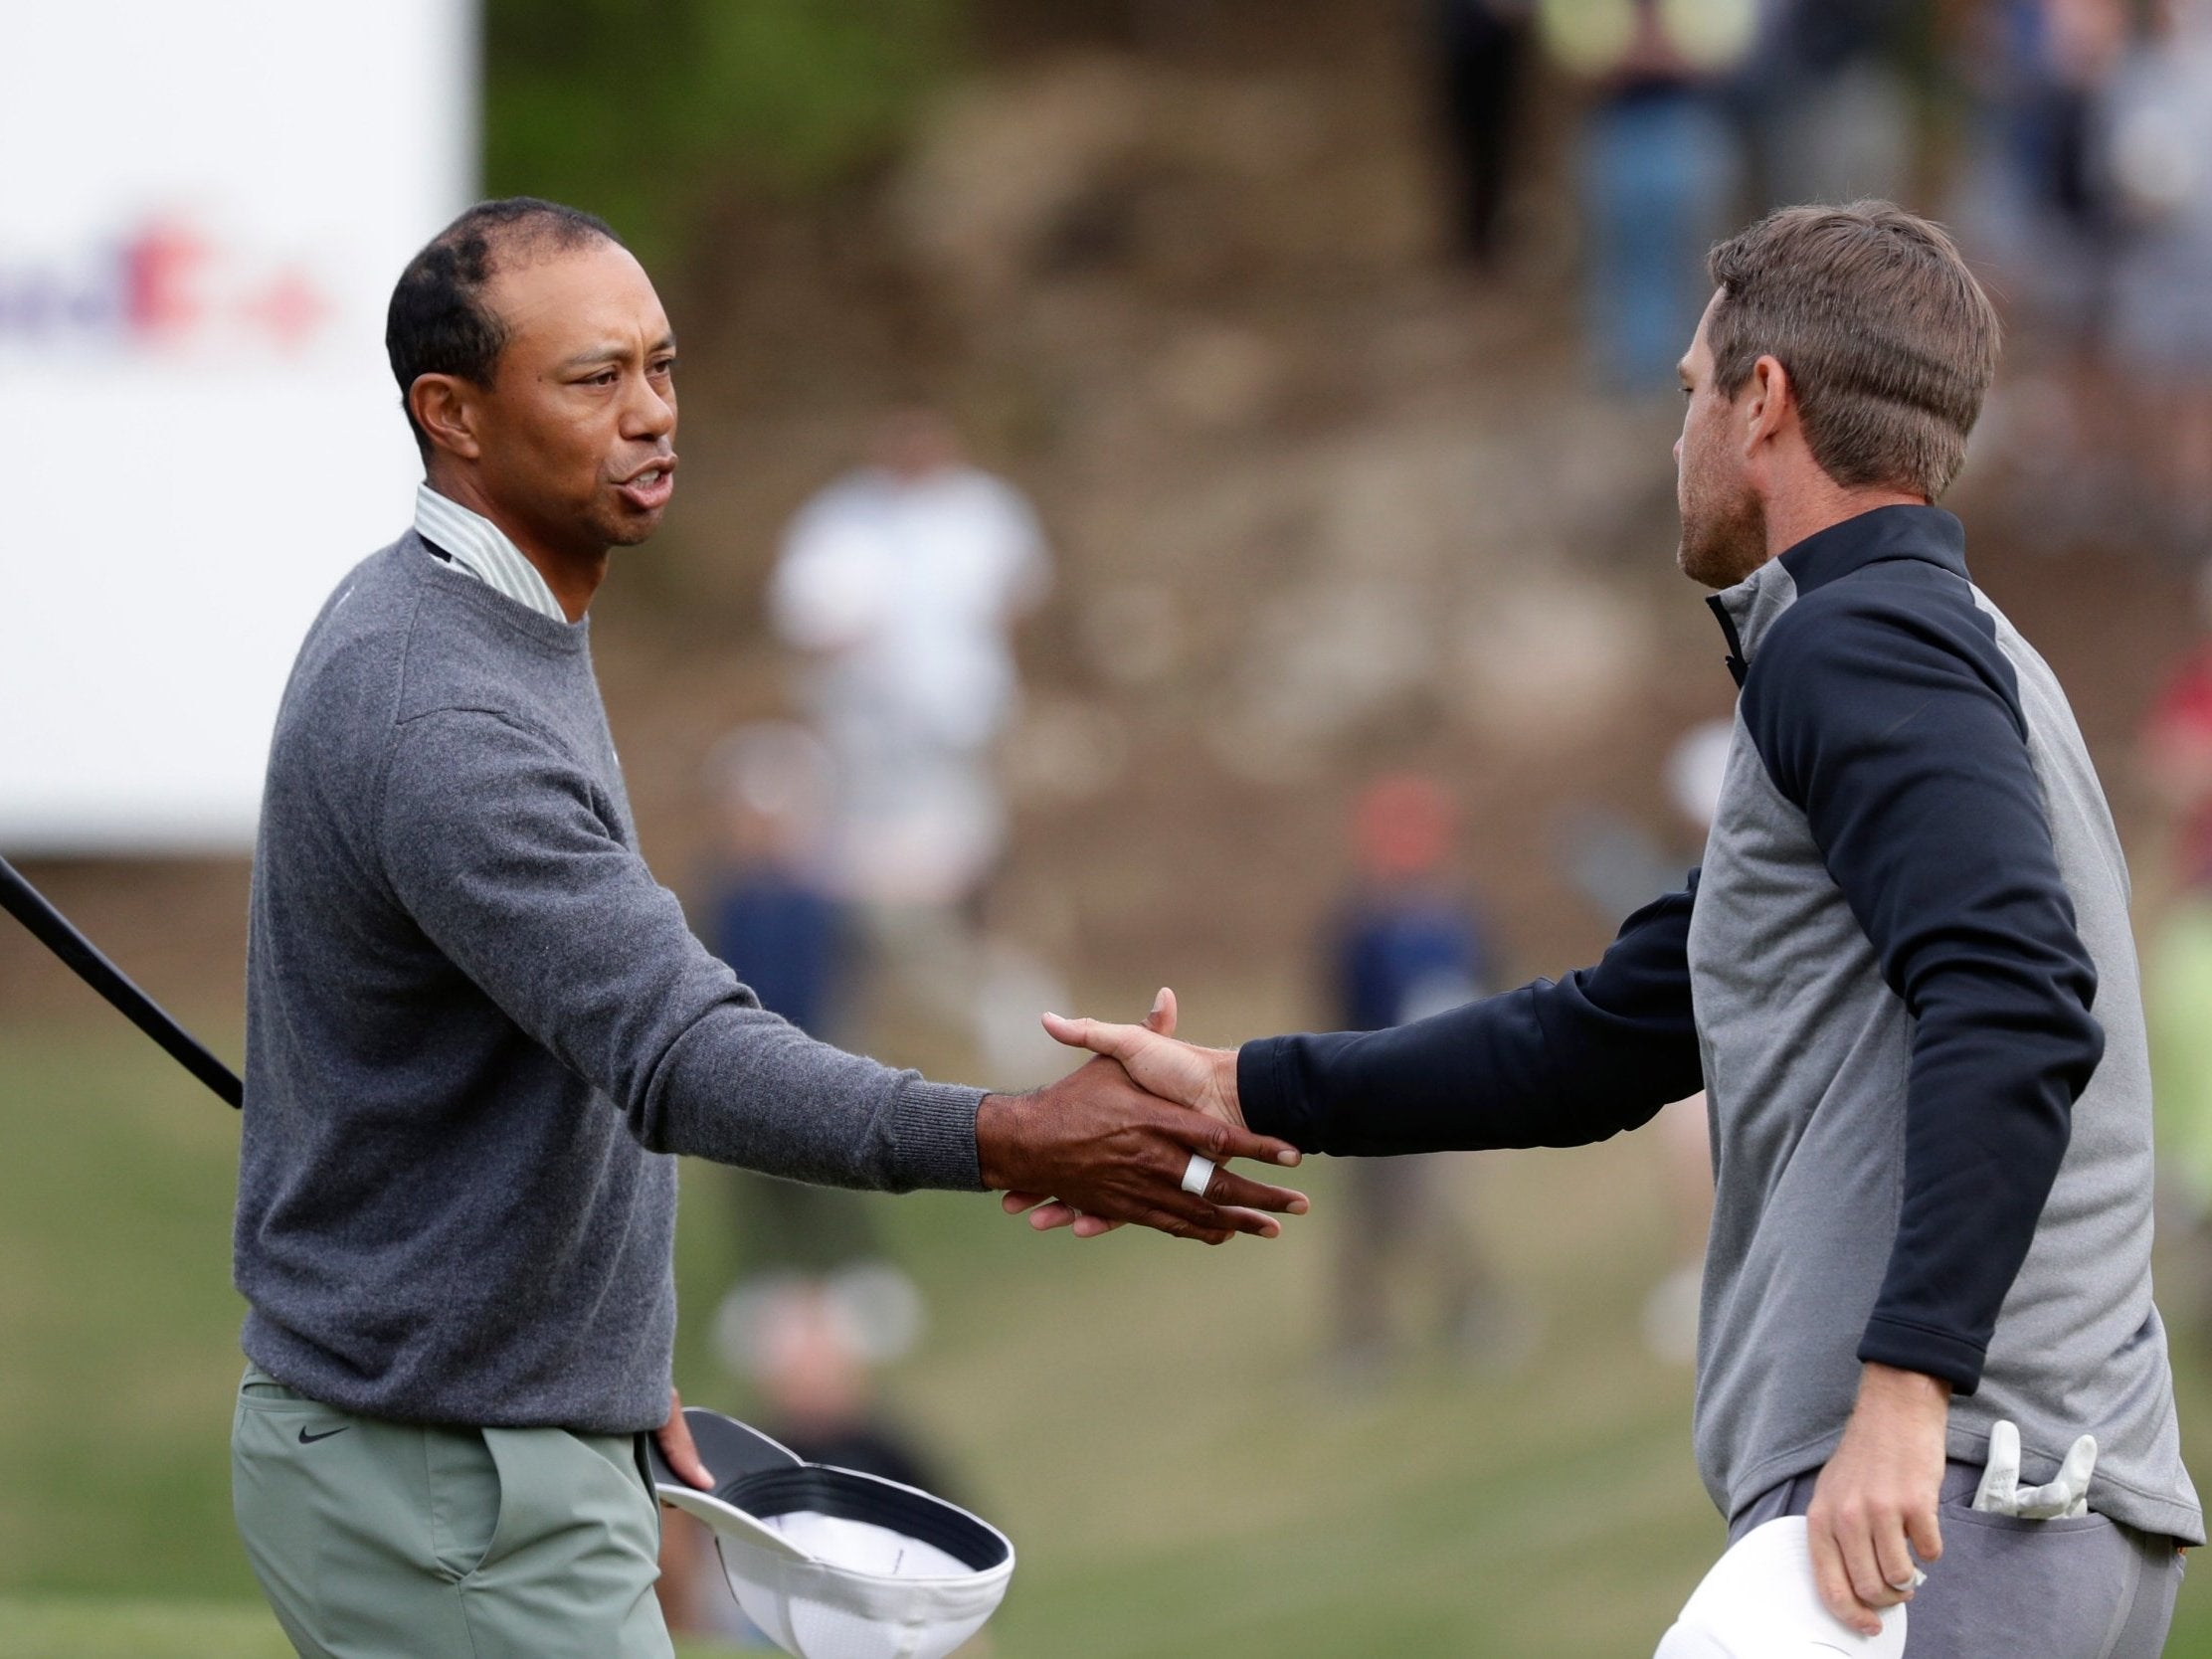 Tiger Woods congratulates Lucas Bjerregaard after their WGC Match Play quarter-final